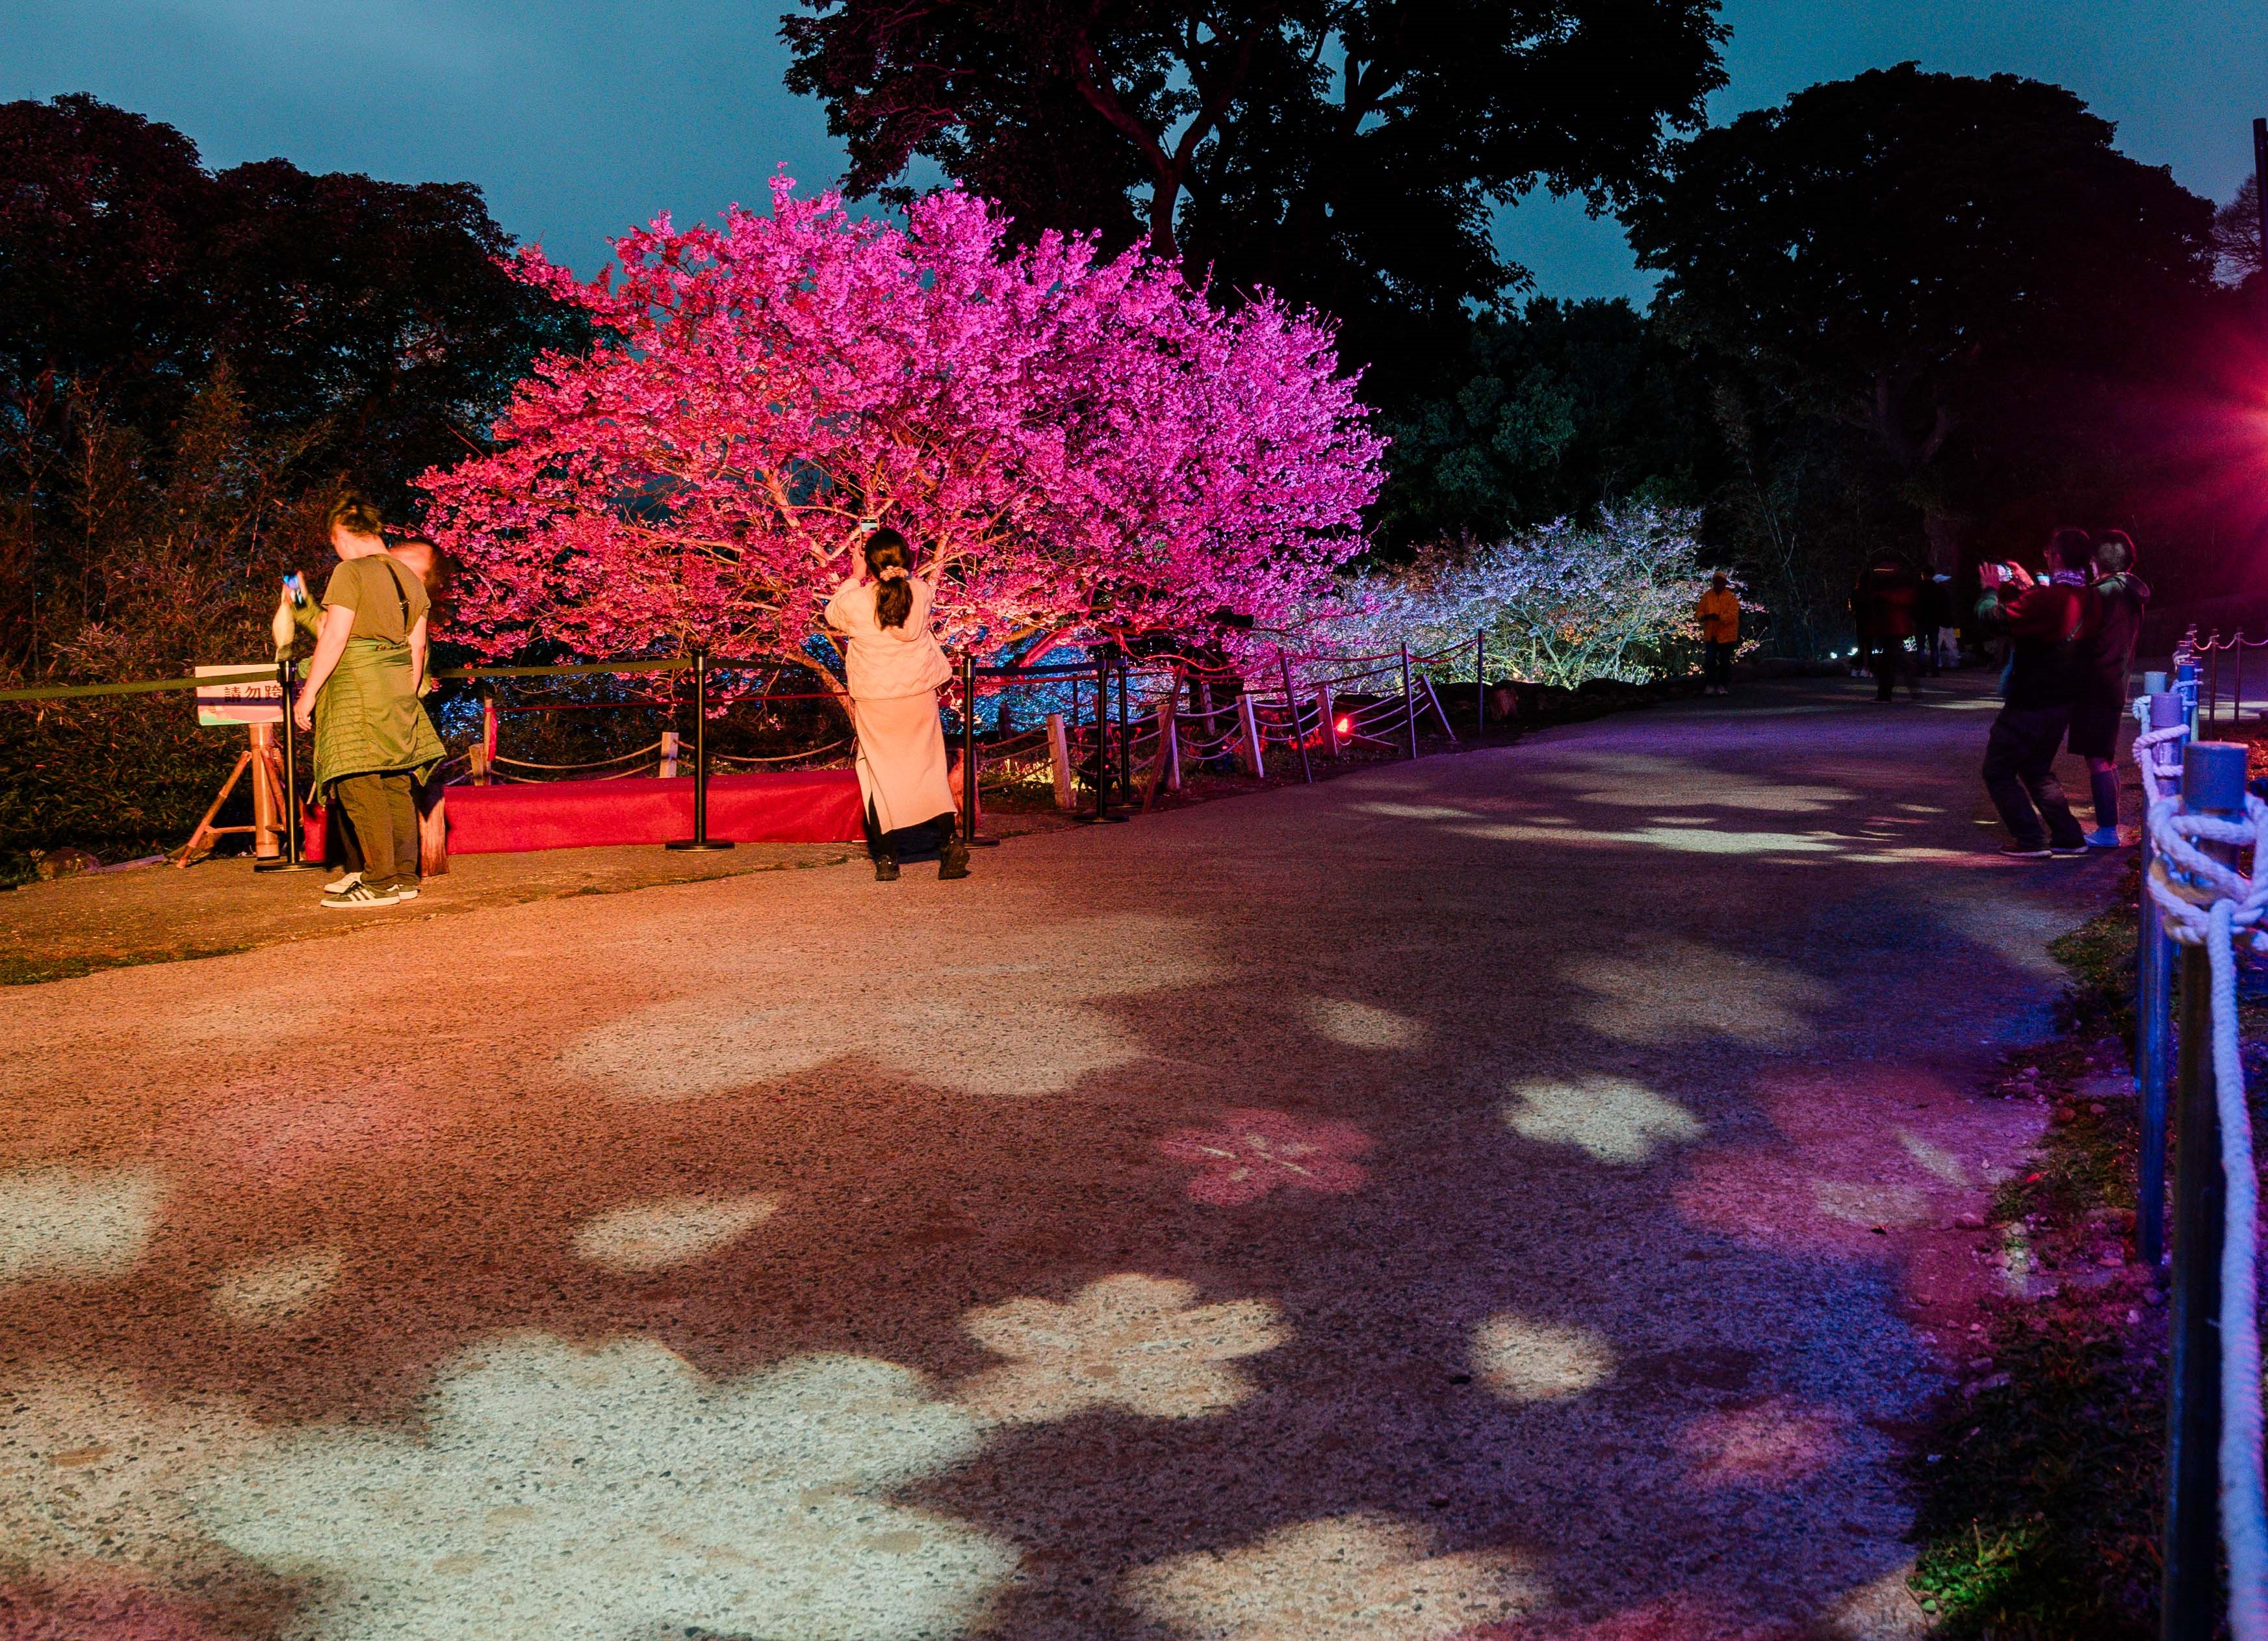  來到天元宮賞夜櫻千萬別錯過「流動櫻蒔區」，這是由新媒體藝術家郭佩奇老師所設計，於地面投射出具有律動感的櫻花花瓣